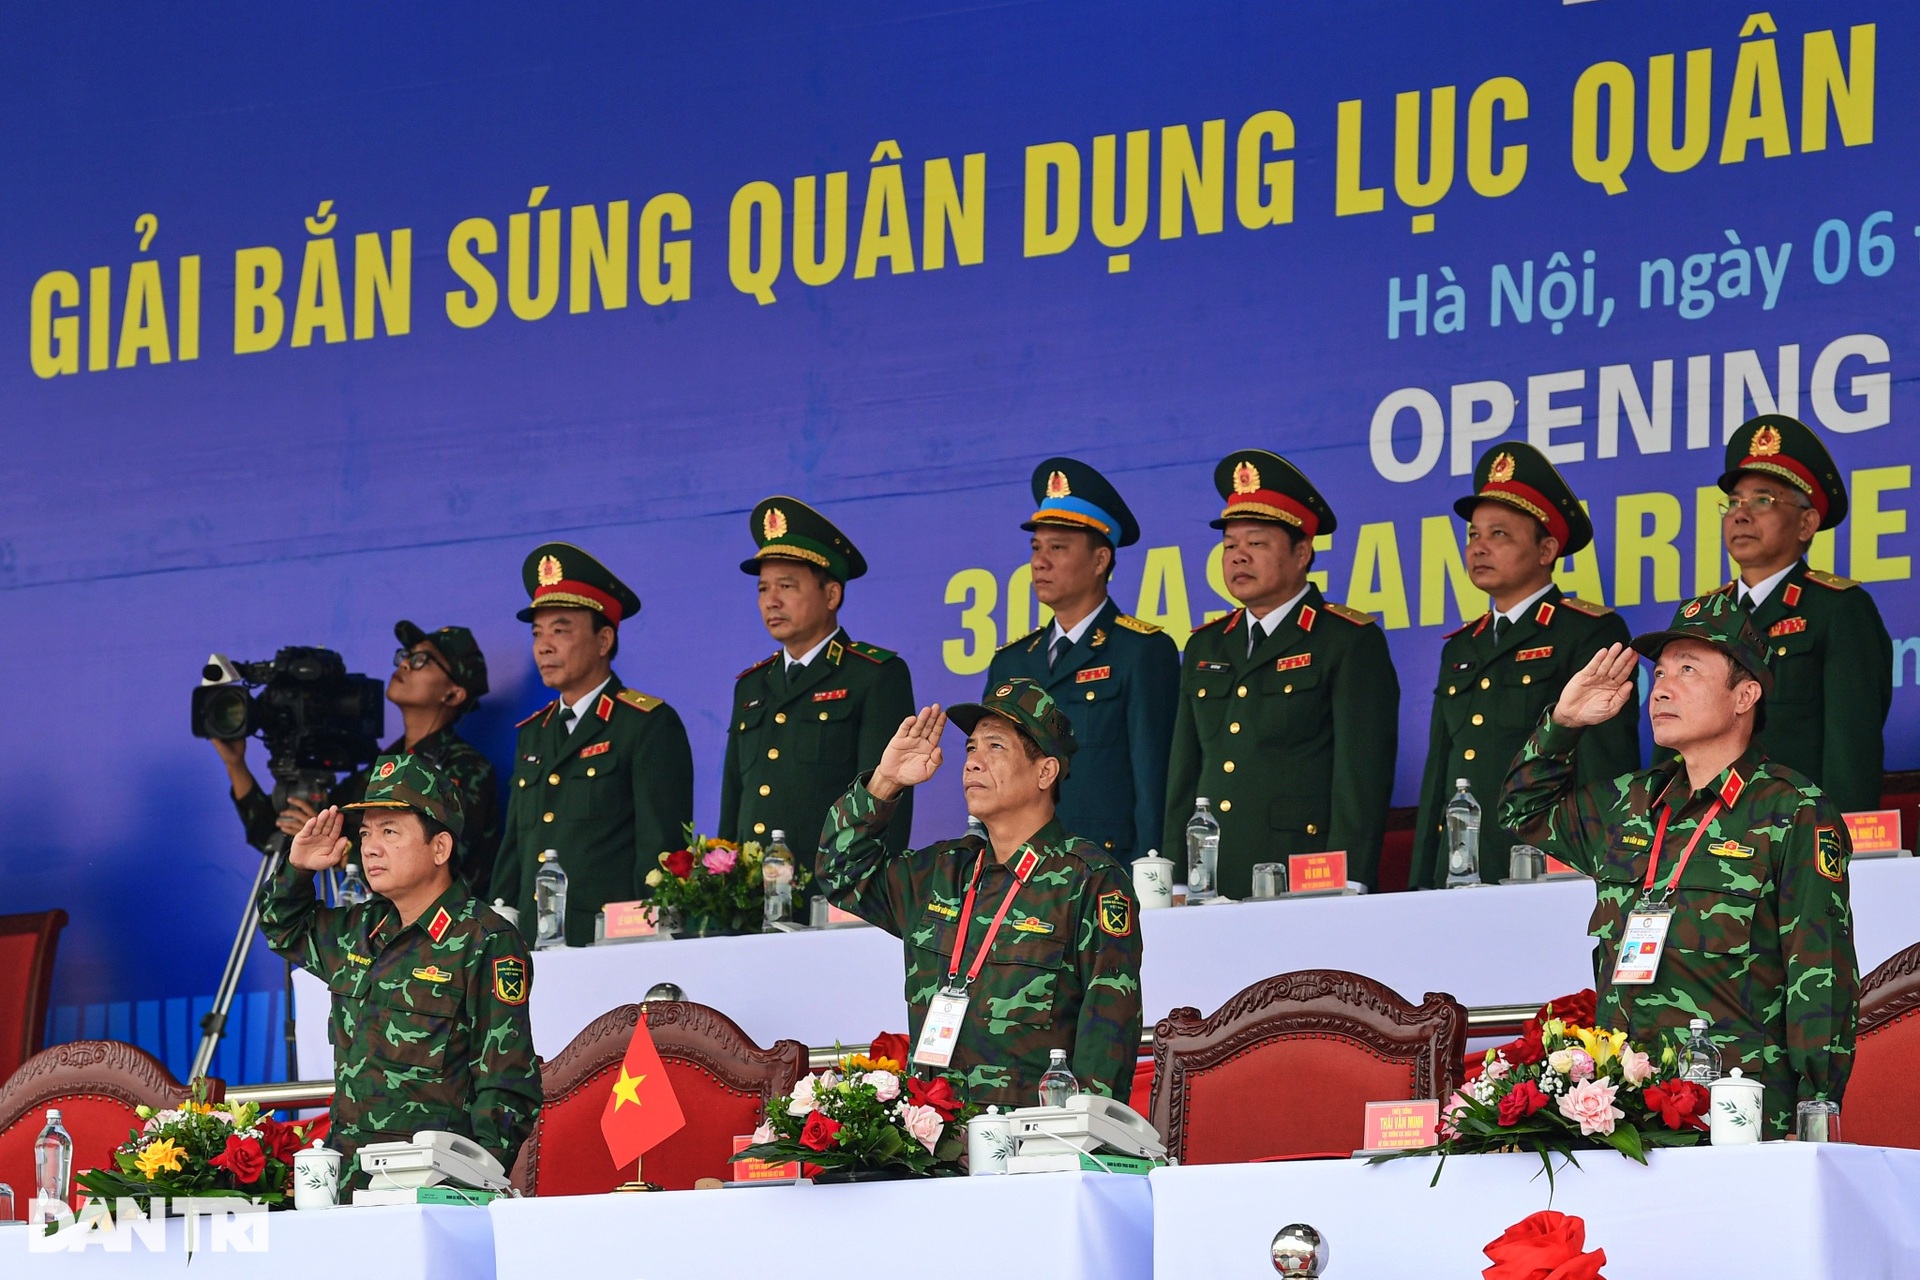 Quân đội các nước ASEAN đua tài bắn súng ở Việt Nam - 3